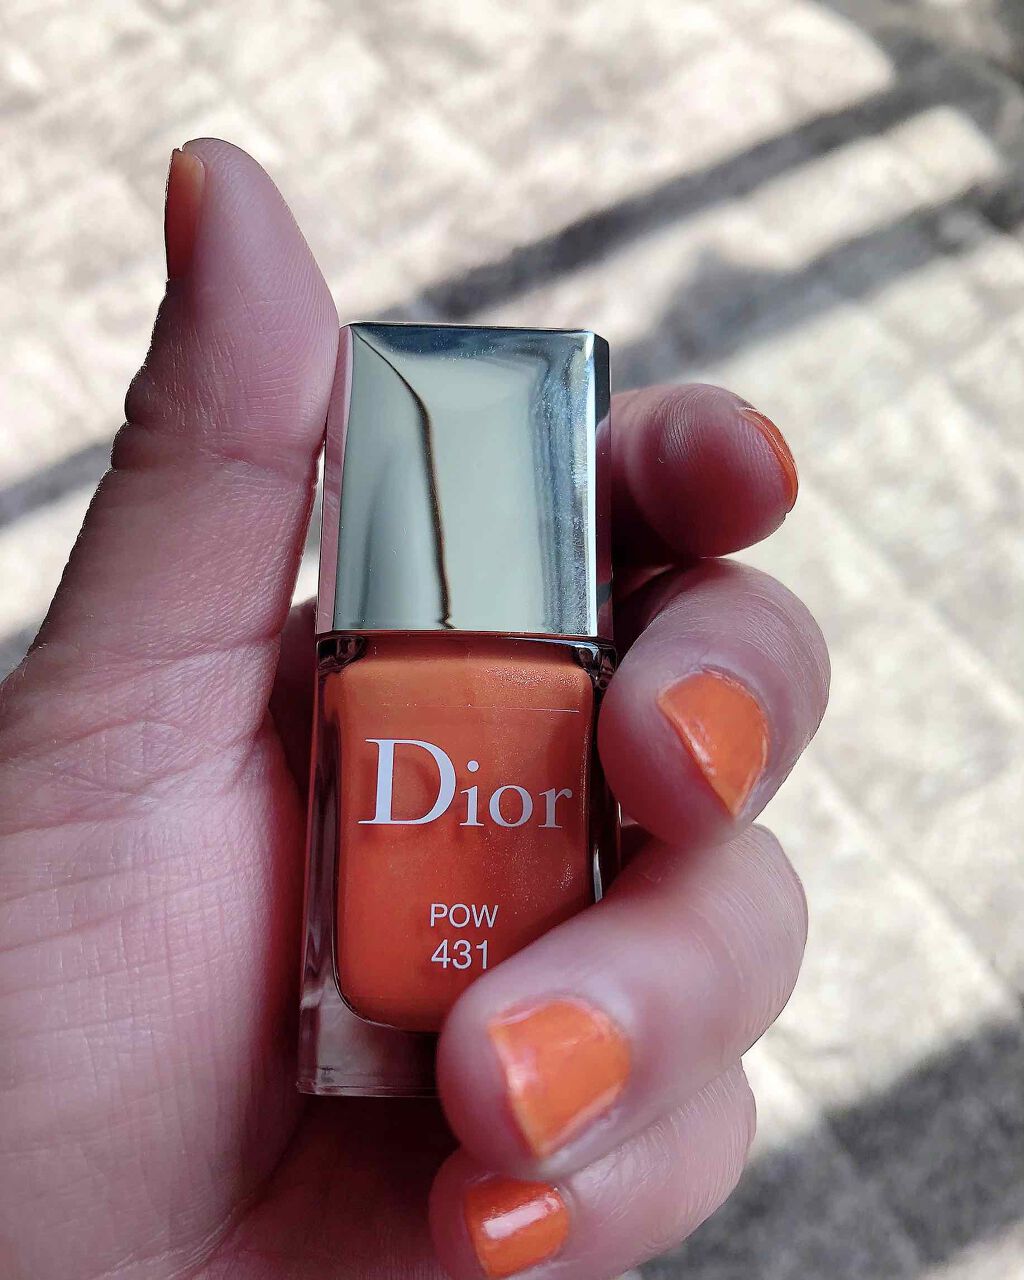 限定マニキュア ディオール ヴェルニ Diorの口コミ オレンジネイル クリスチャンディオ By さっちー 敏感肌 40代前半 Lips